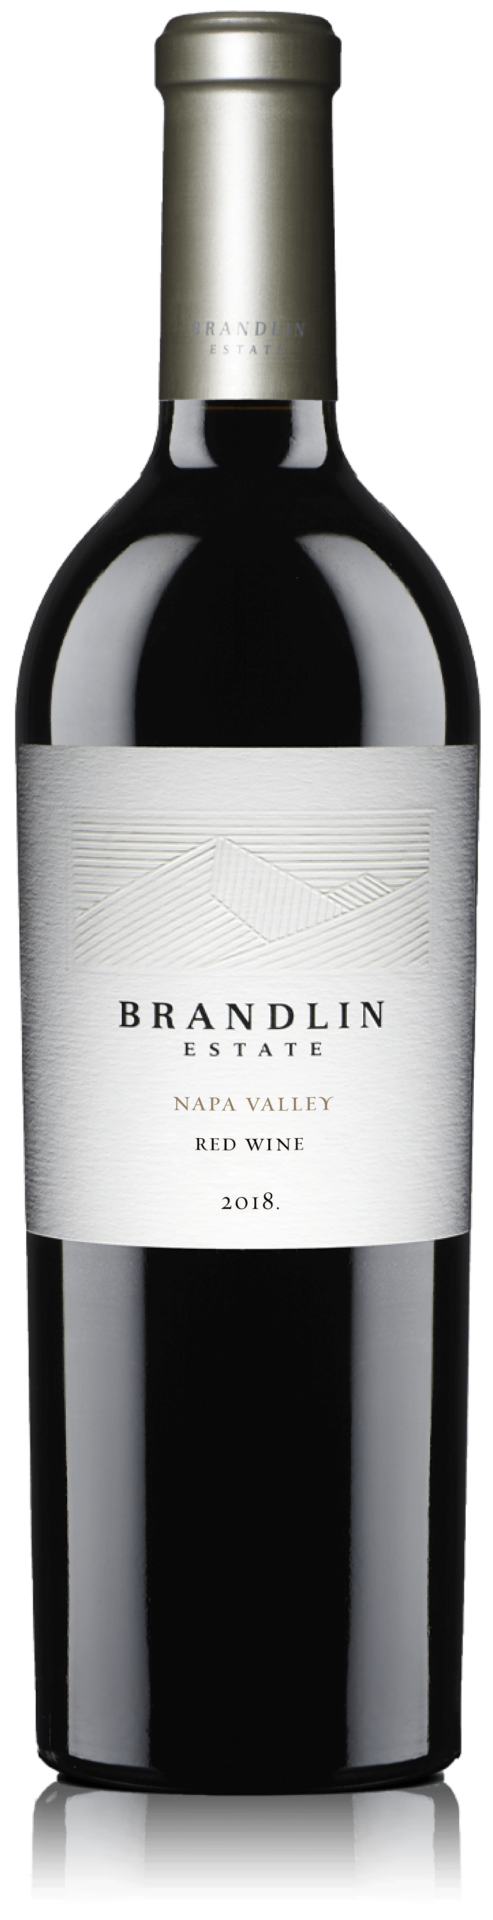 Brandlin Estate Cuvée, Red Wine bottle shot